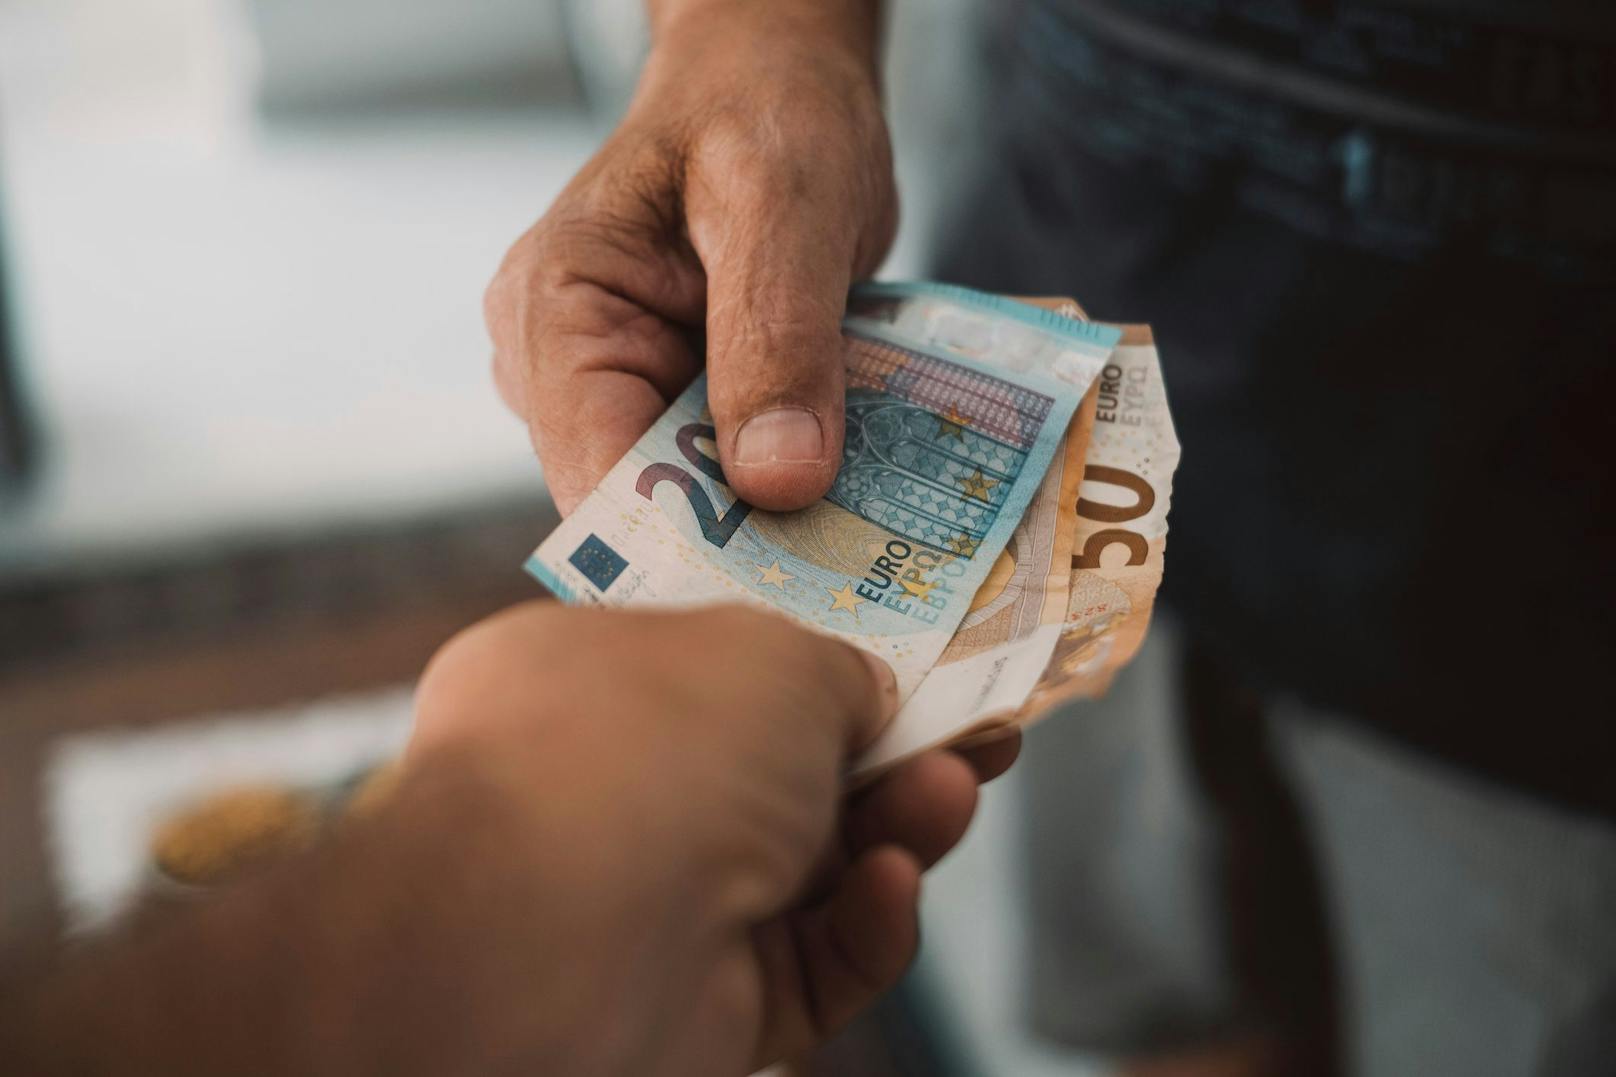 Eine Rumänin soll betagte Männer um ihr bitter erspartes Geld gebracht haben. (Symbolbild)